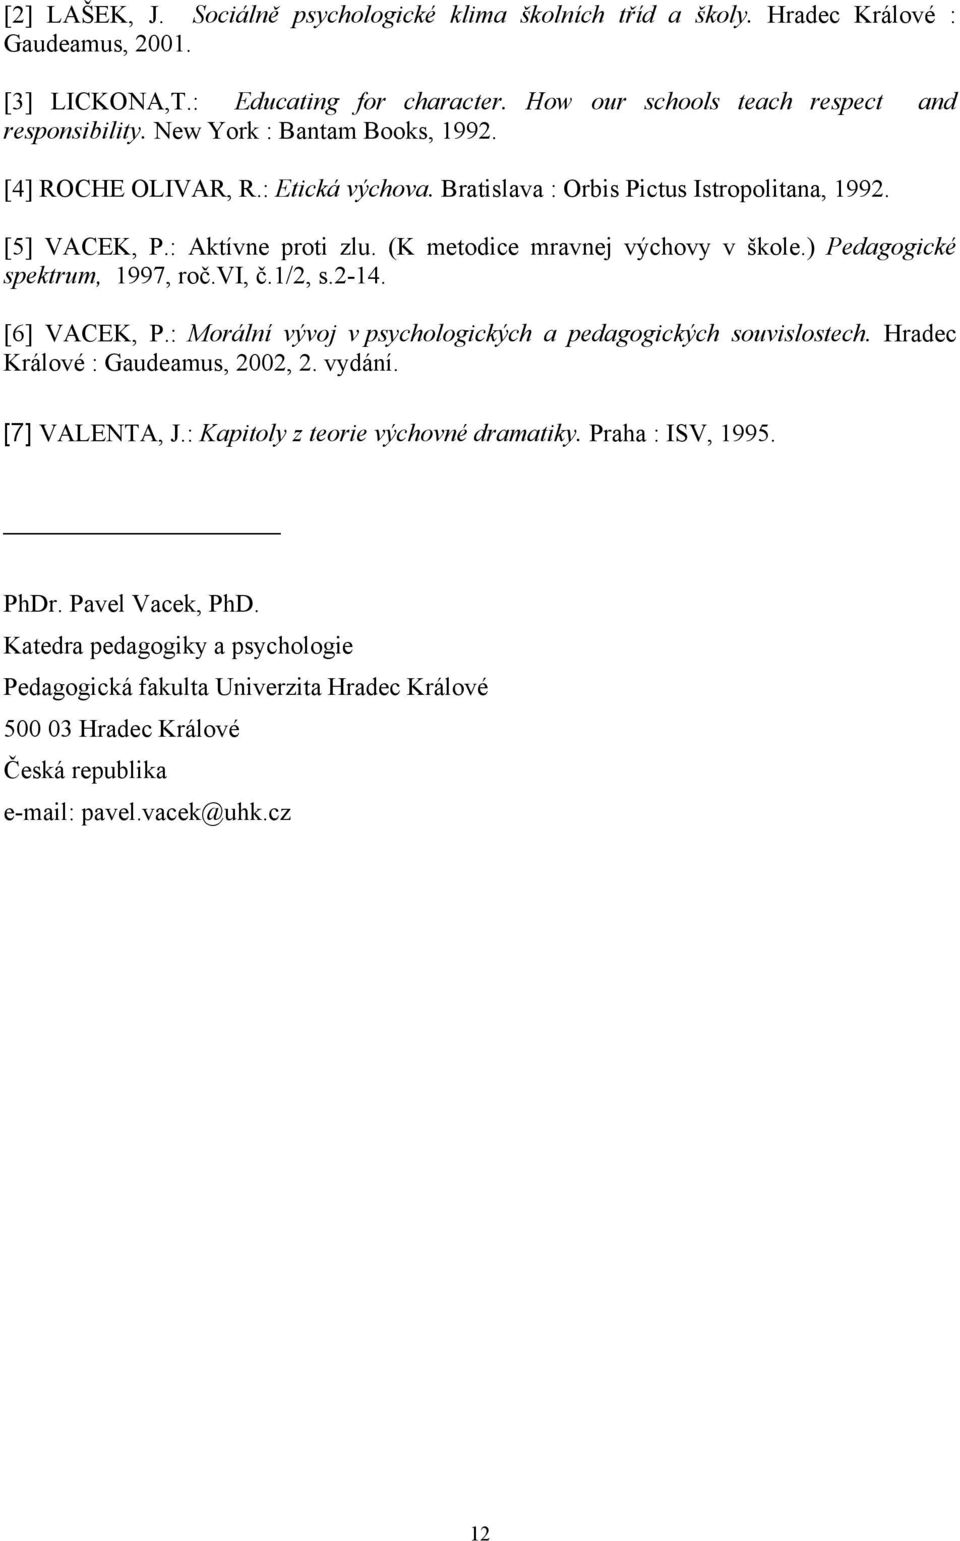 ) Pedagogické spektrum, 1997, roč.vi, č.1/2, s.2-14. [6] VACEK, P.: Morální vývoj v psychologických a pedagogických souvislostech. Hradec Králové : Gaudeamus, 2002, 2. vydání. [7] VALENTA, J.